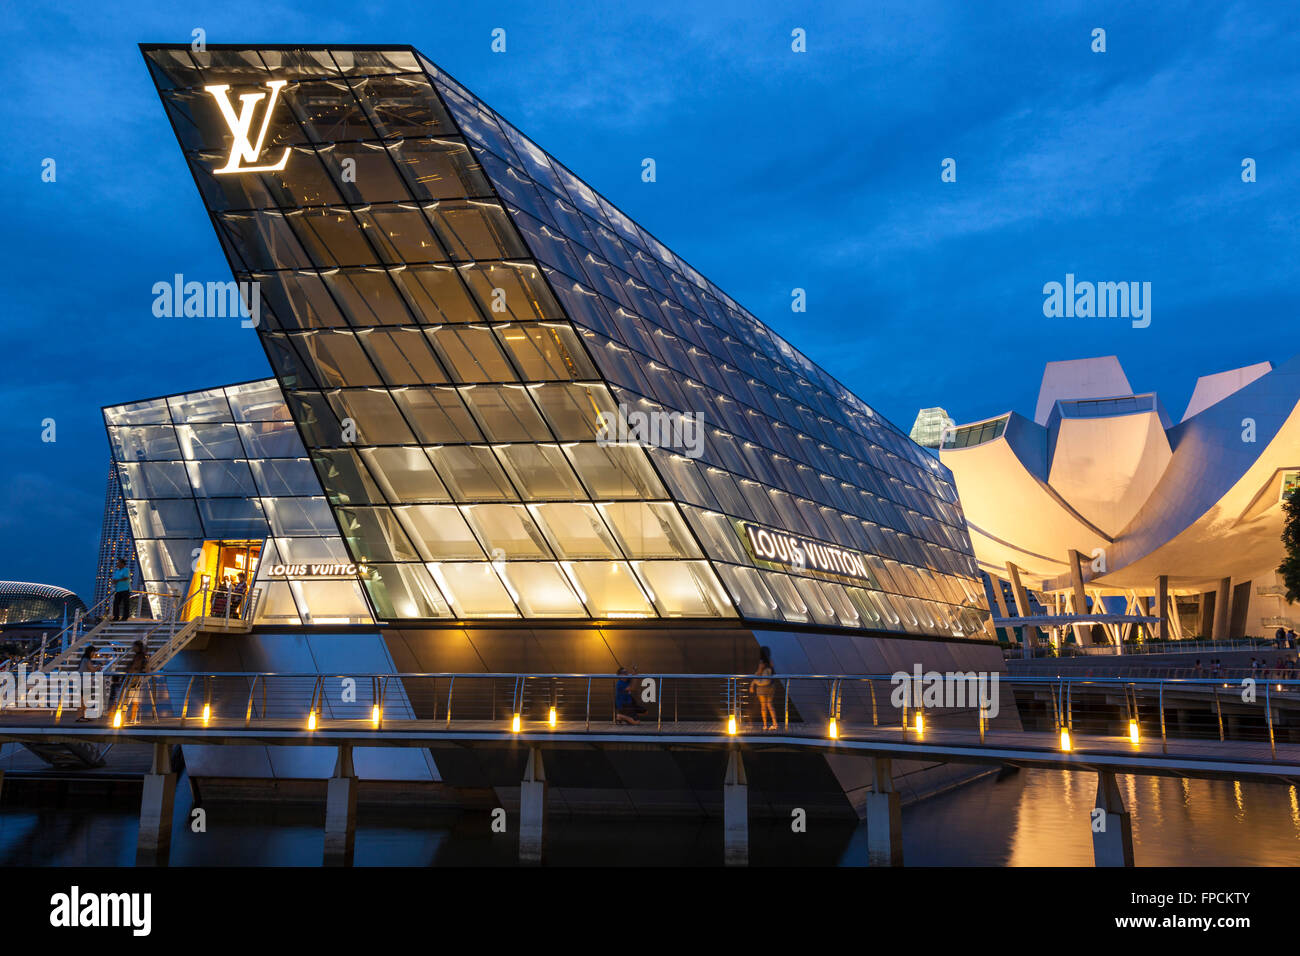 Louis Vuitton Singapore Building